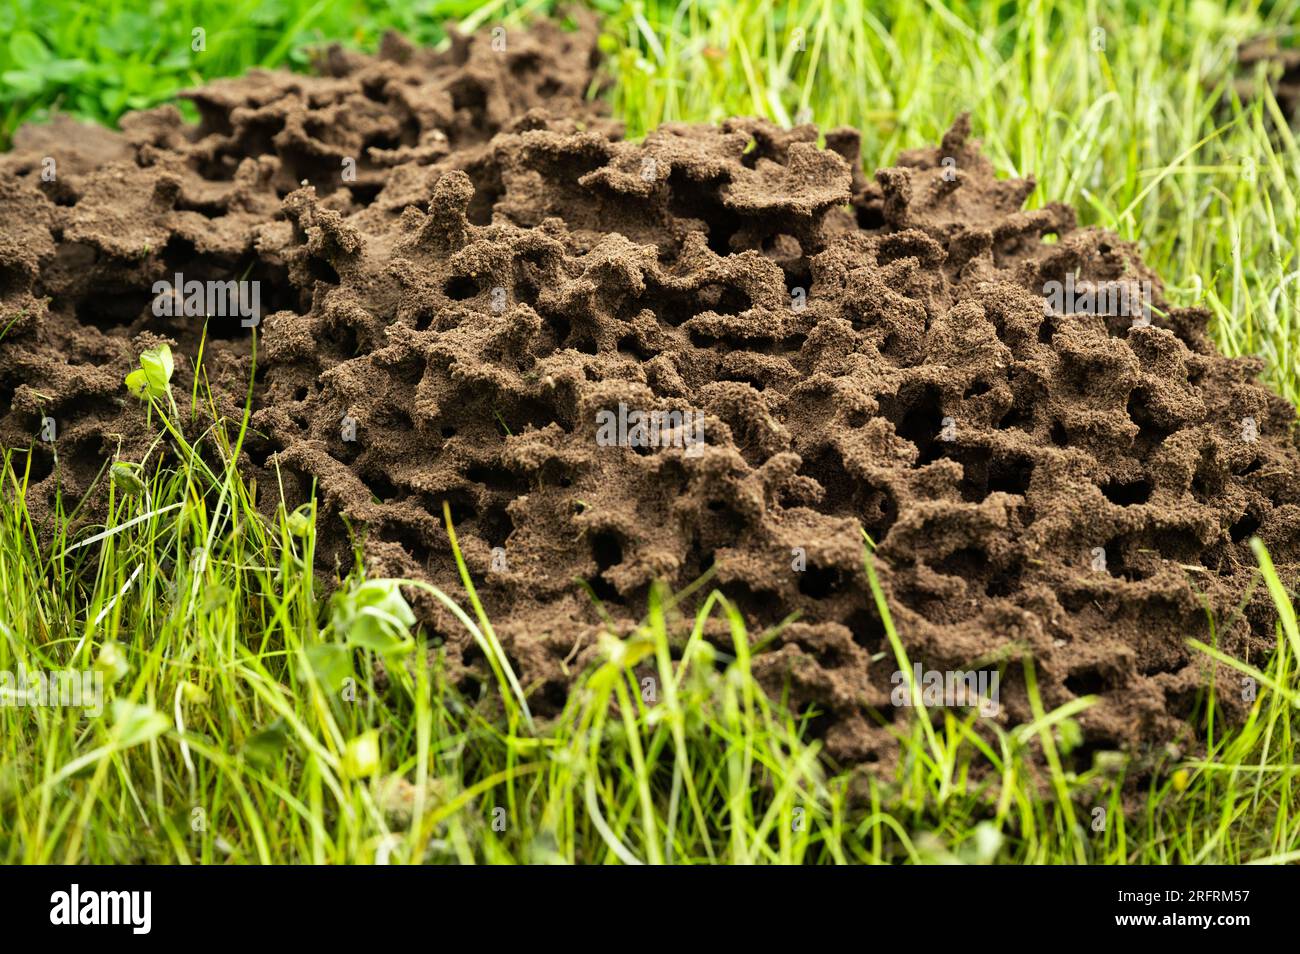 Nid de fourmis au-dessus du sol avec des formes rondes avec des structures de la nature Banque D'Images